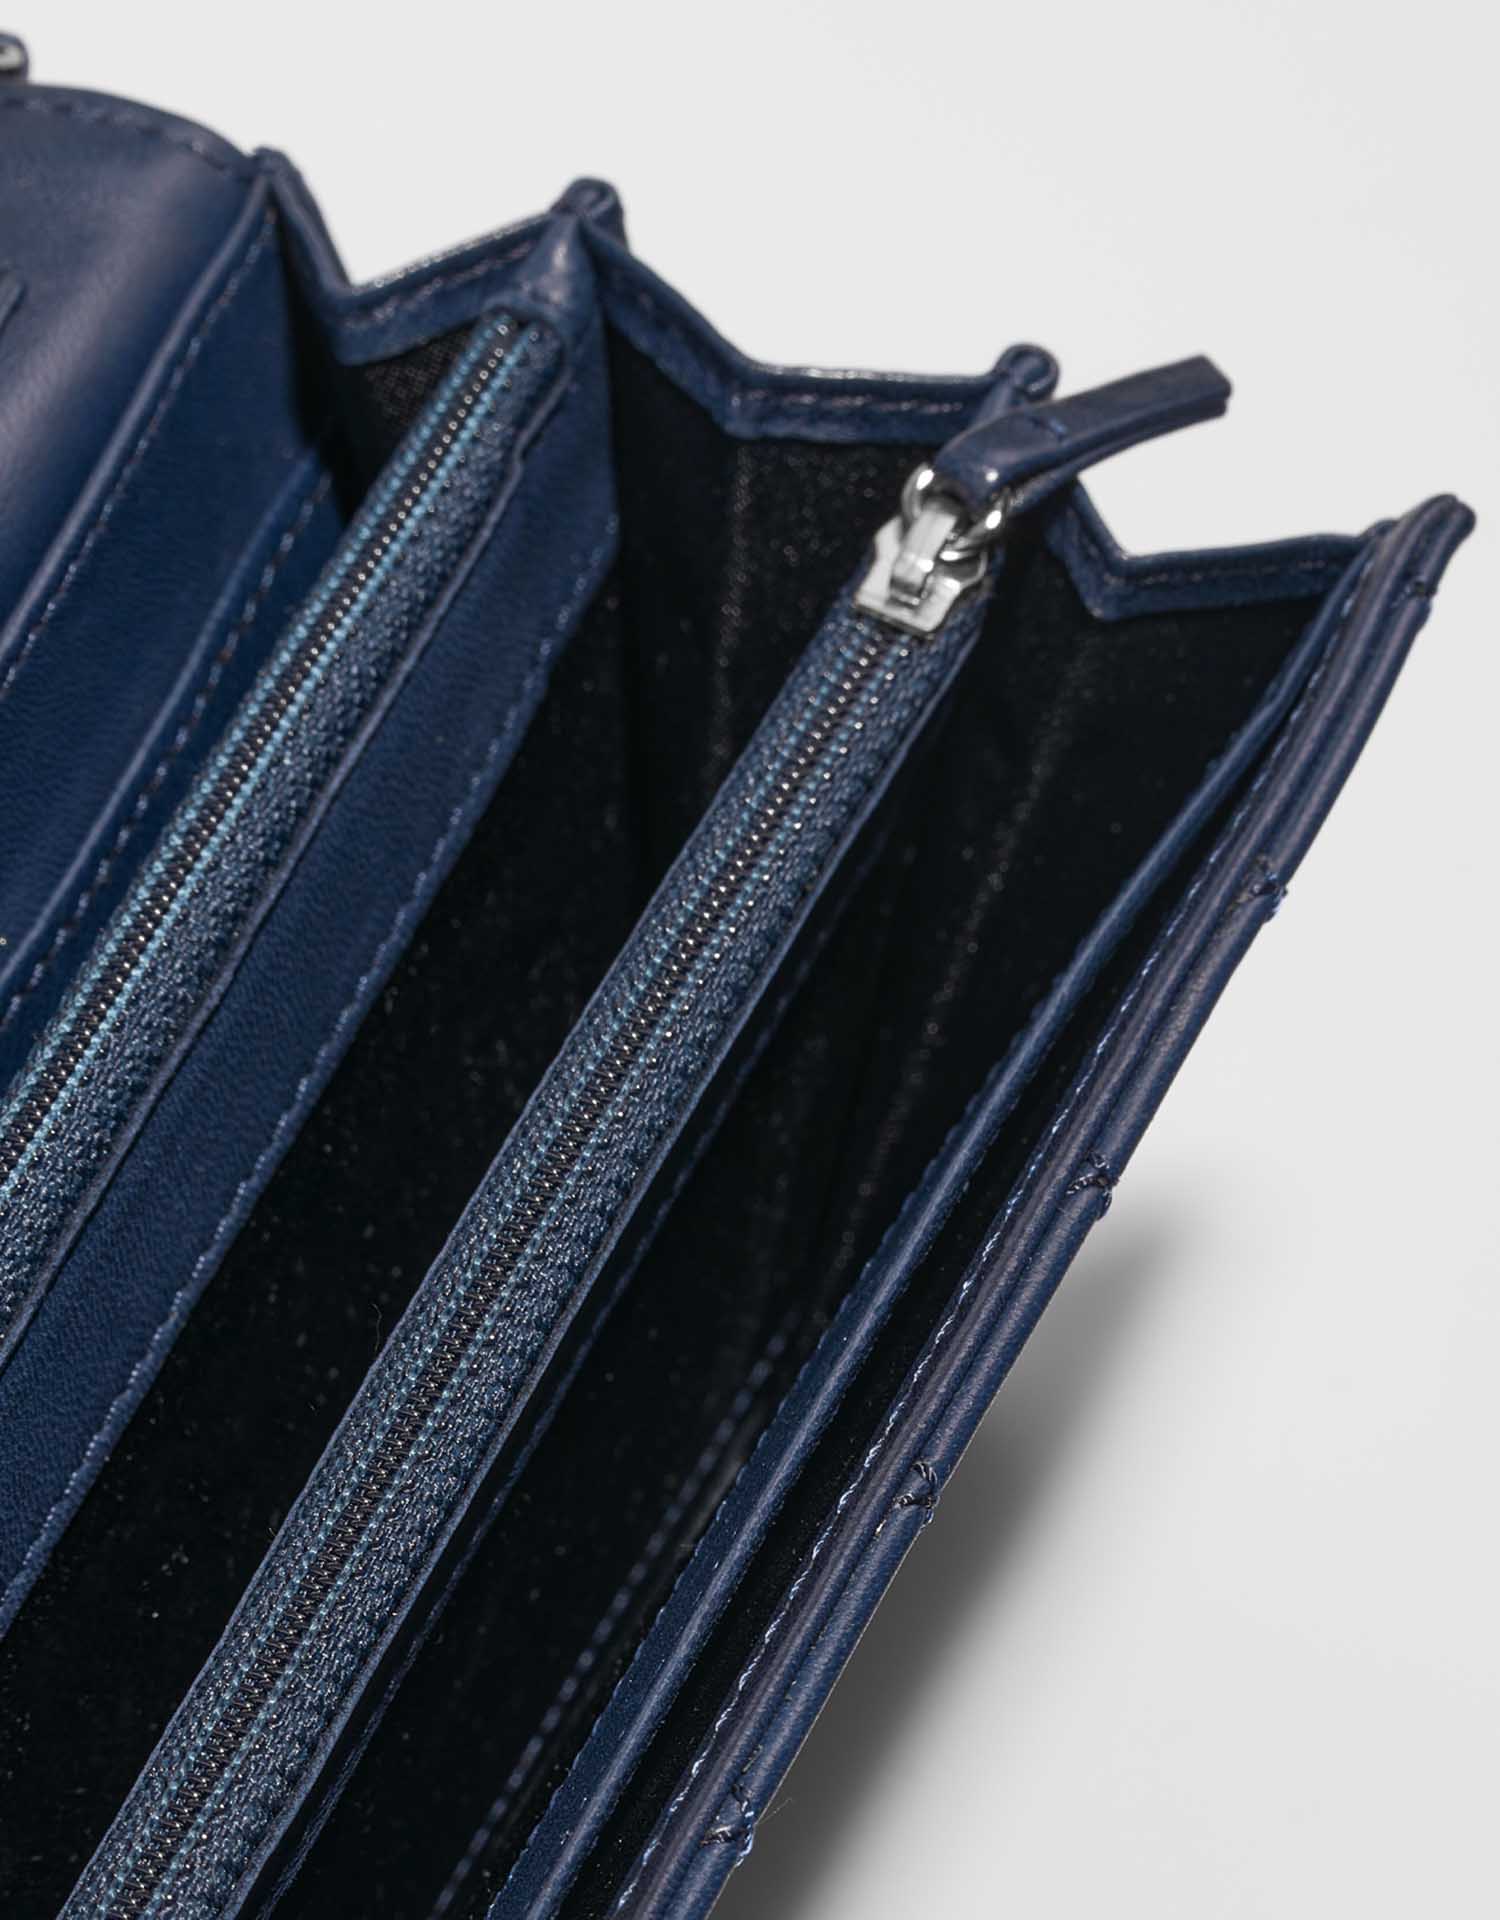 Chanel Timeless Medium DarkBlue Gebrauchsspuren | Verkaufen Sie Ihre Designer-Tasche auf Saclab.com